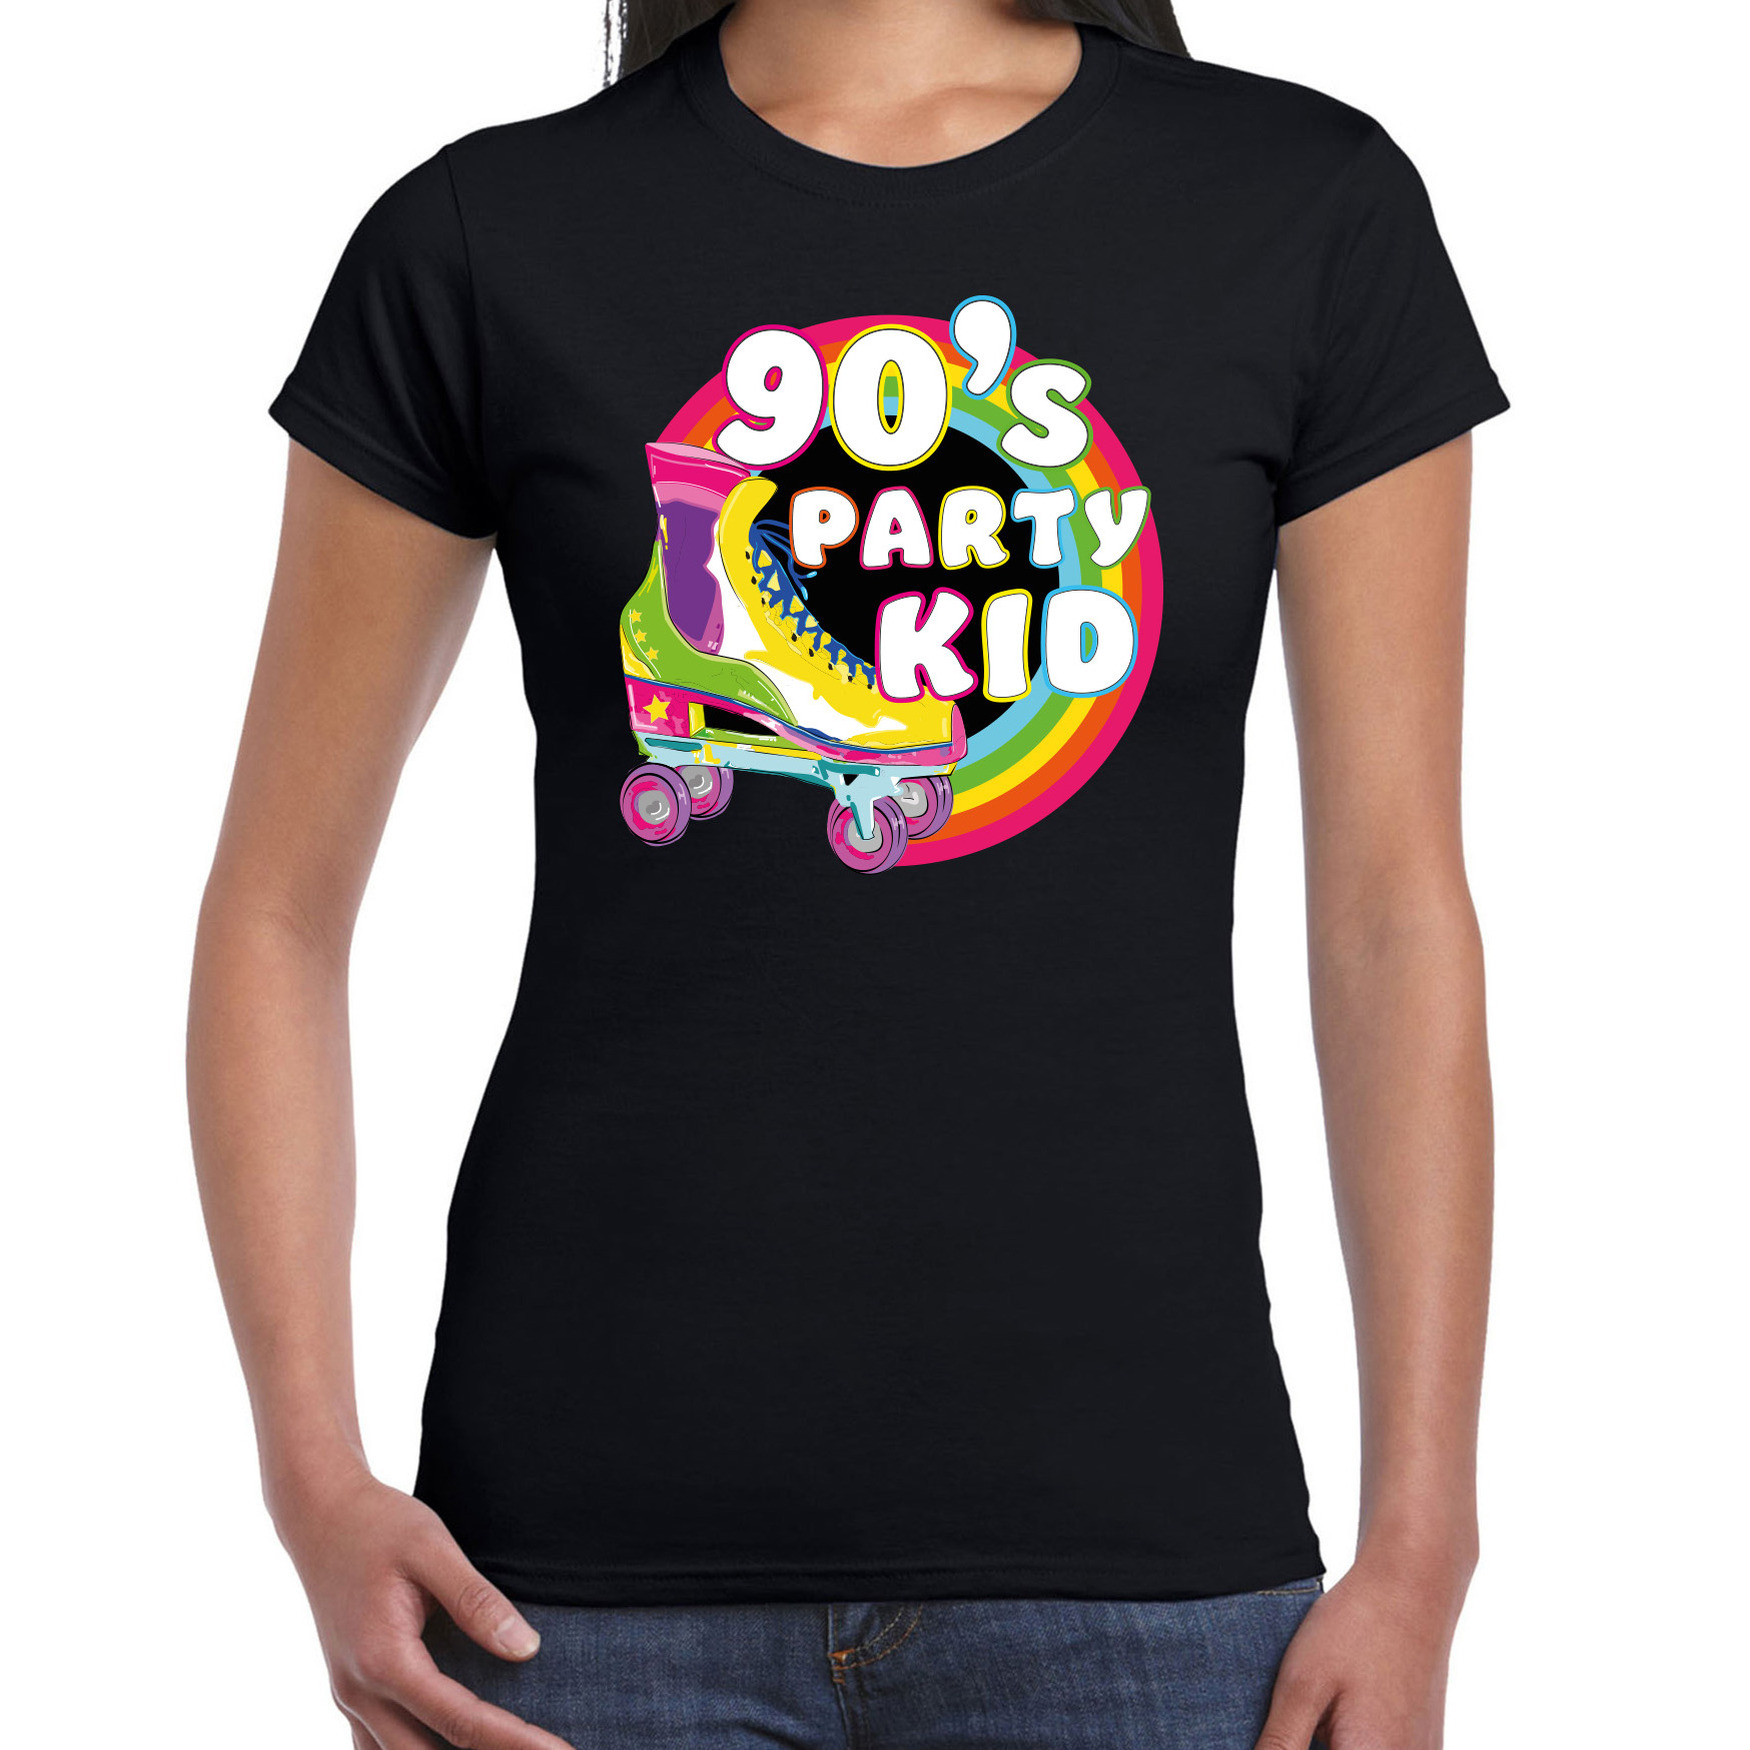 Bellatio Decorations nineties party verkleed t-shirt dames jaren 90 feest outfit 90s party kid zwart